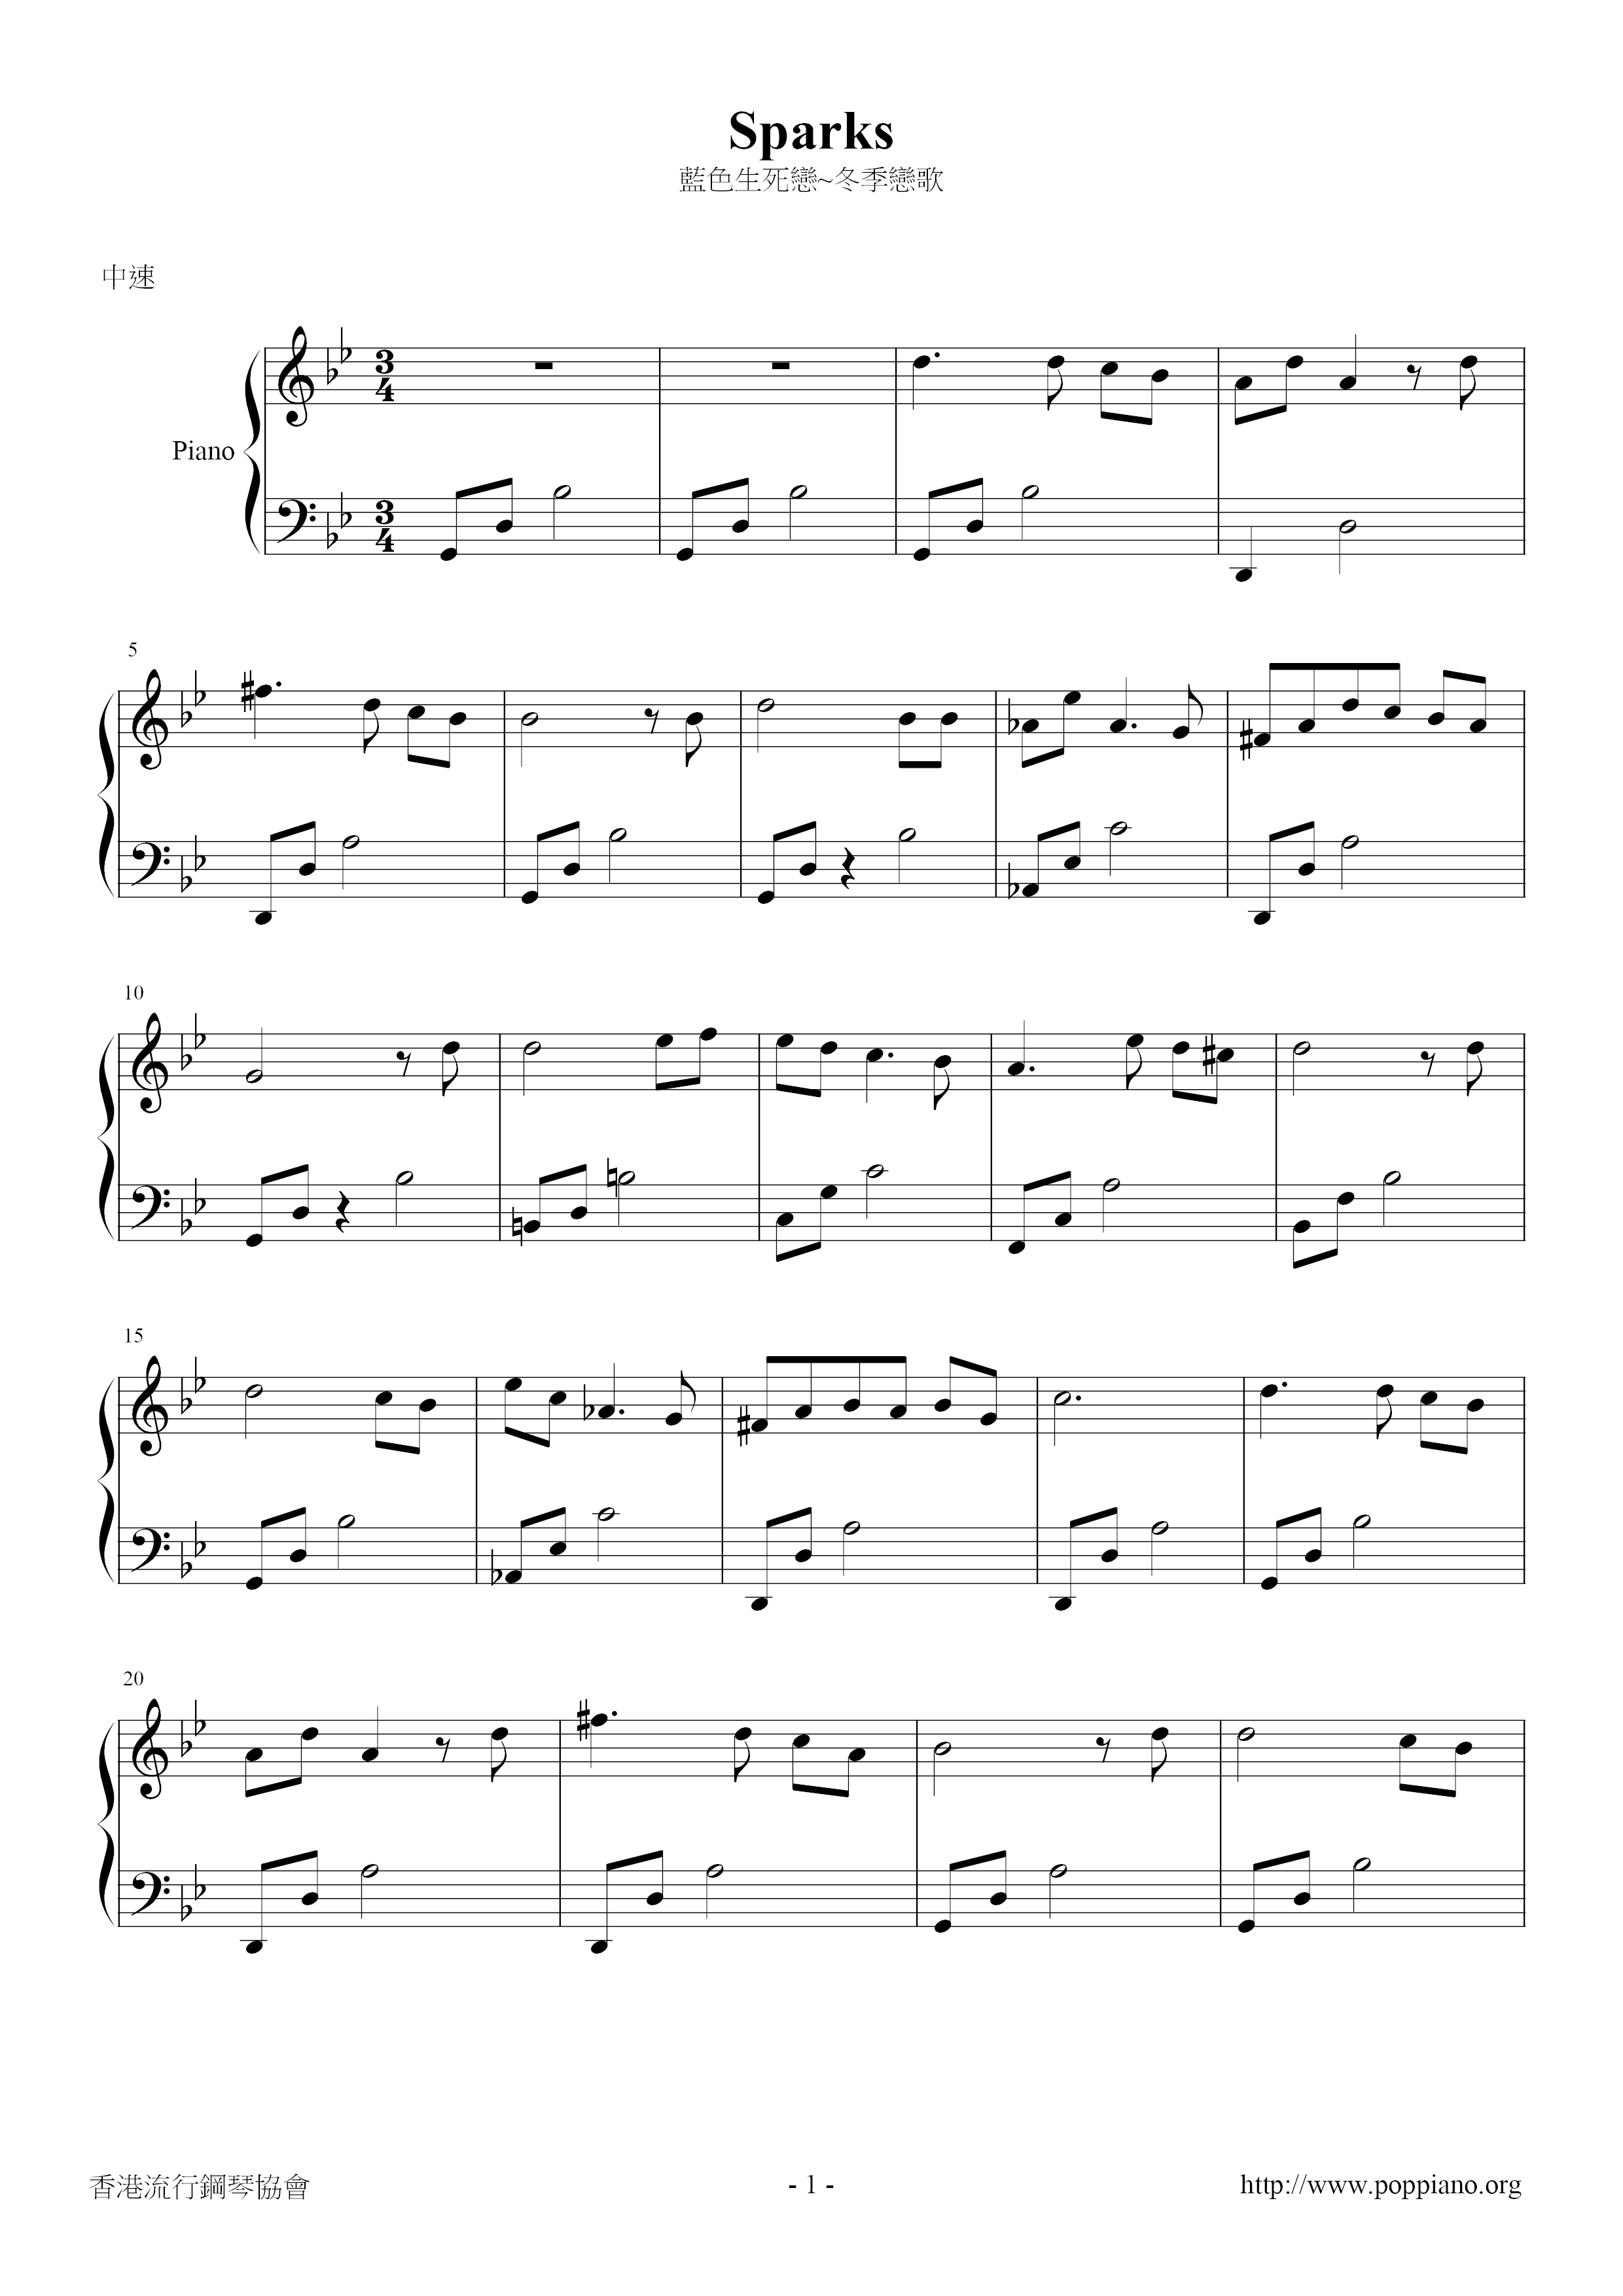 Winter Sonata - Sparks Score